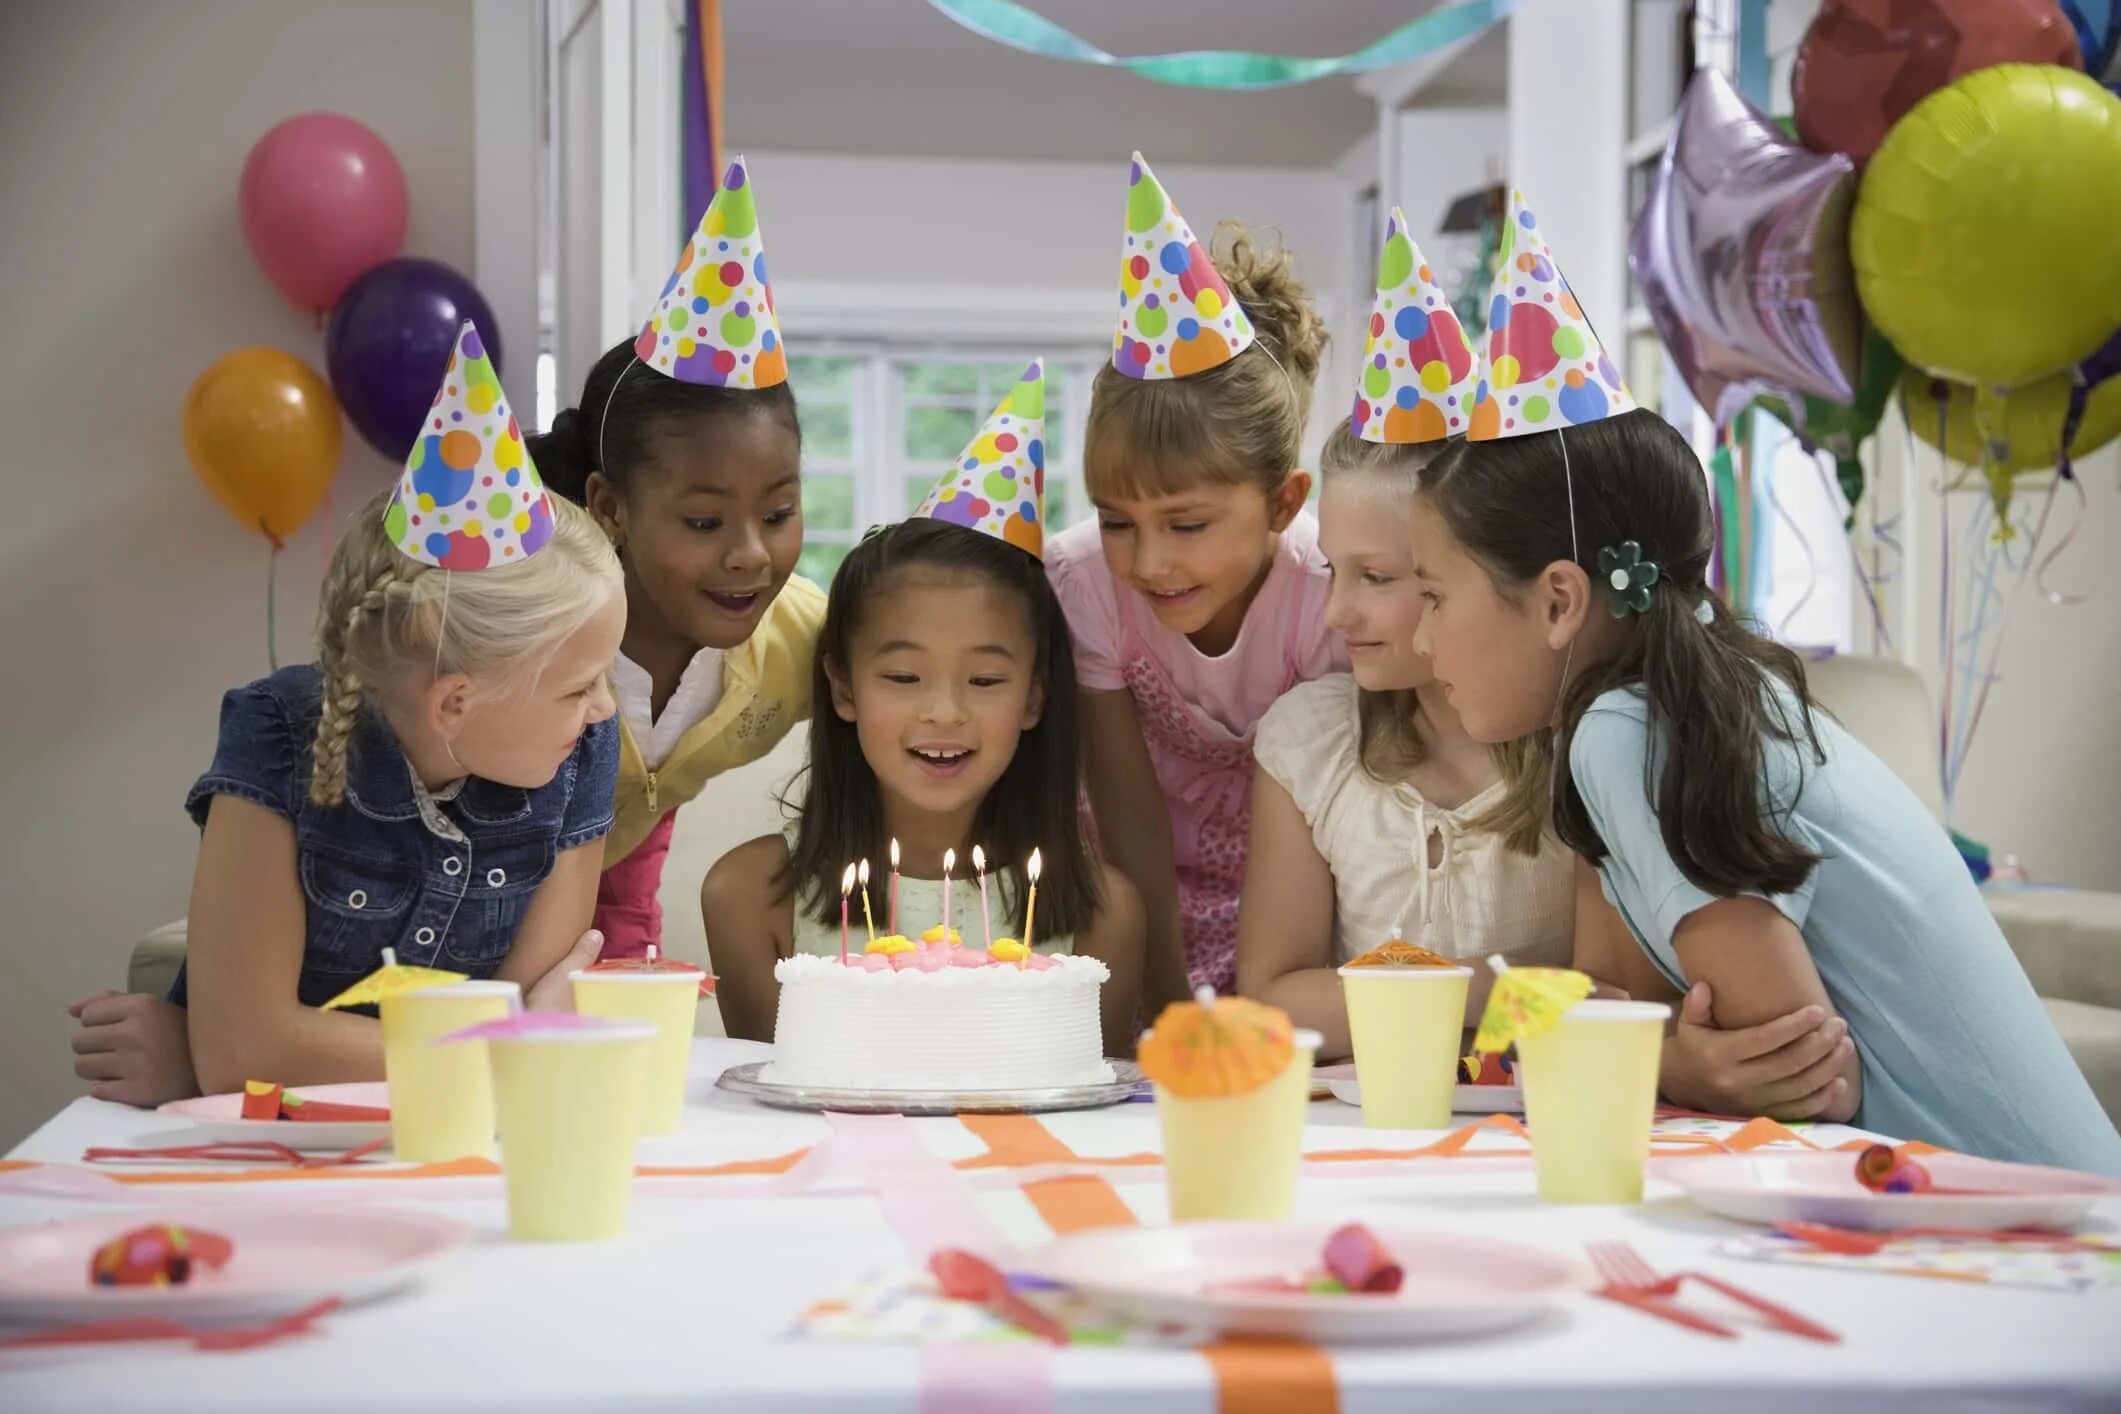 Развлечение за столом на дне рождения. Празднование дня рождения. Празднование дня рождения ребенка. Празднуют день рождения. Дети отмечают день рождения.